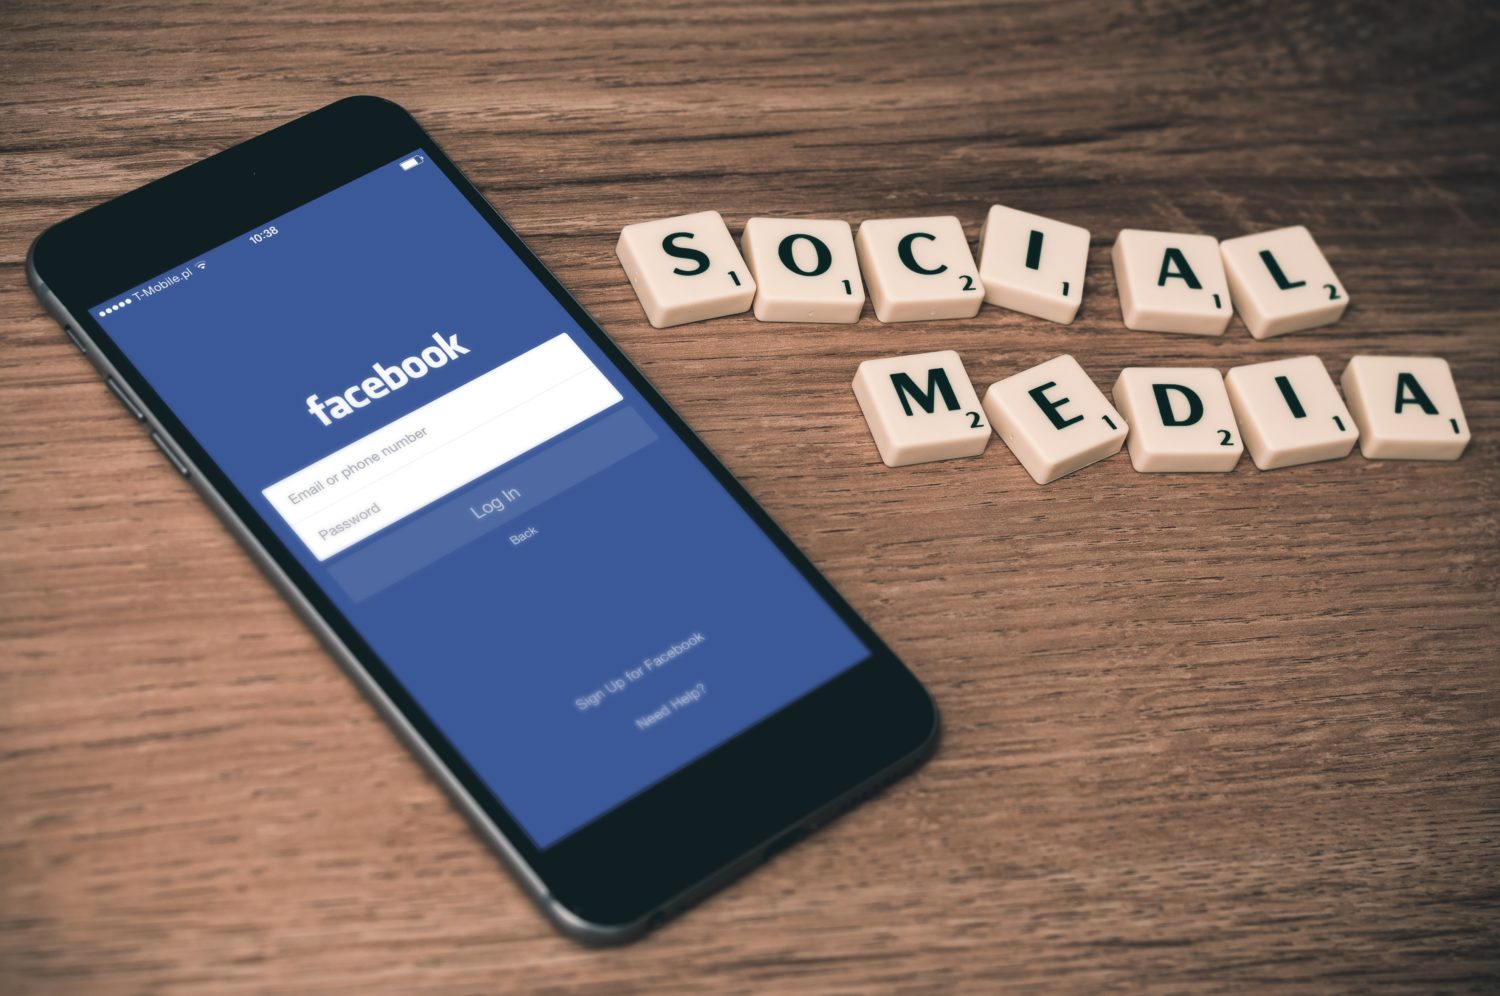 Smartphone mit Facebook-Logo auf dem Screen. Daneben die Worte "Social Media".